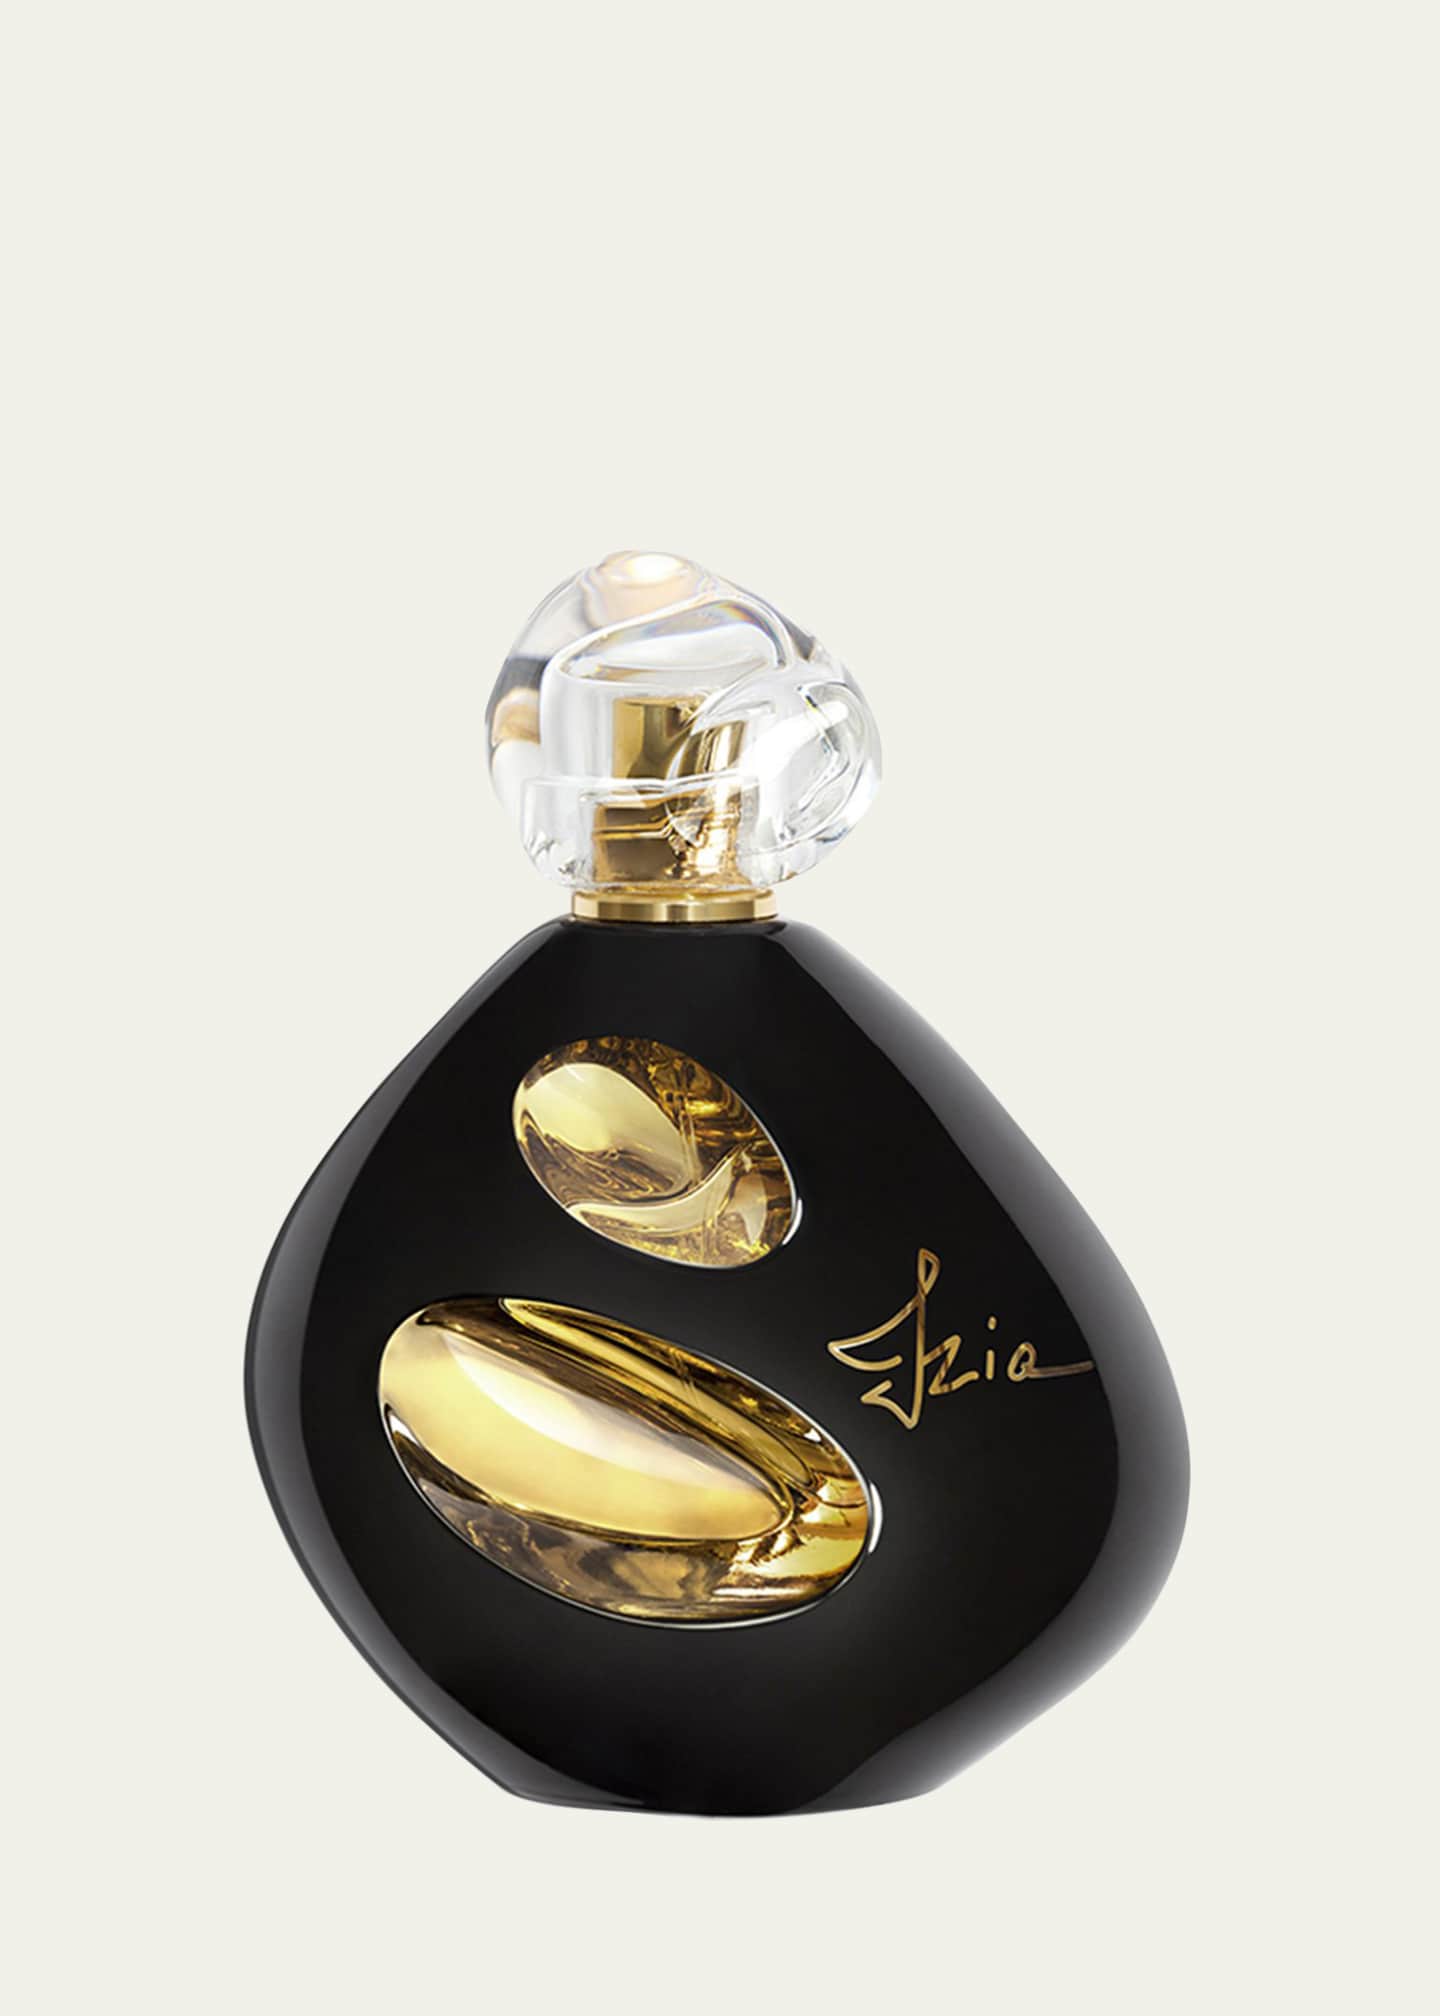 Sisley-Paris Izia La Nuit Eau De Parfum, 3.3 oz. - Bergdorf Goodman